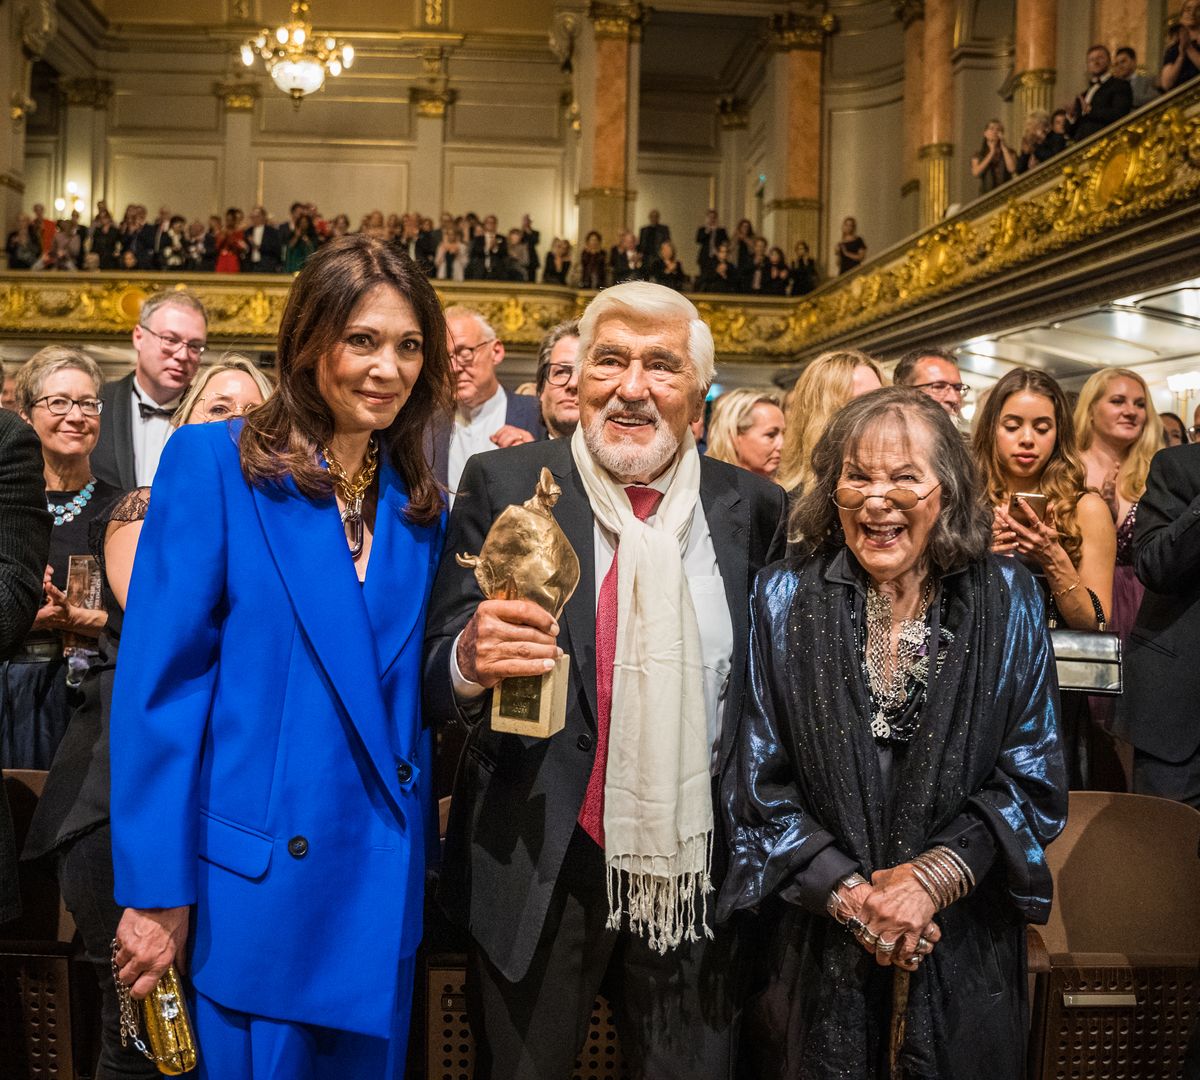 Promi-Gala in Zürich – das sind die Preisträger des Europäischen Kulturpreises 2022